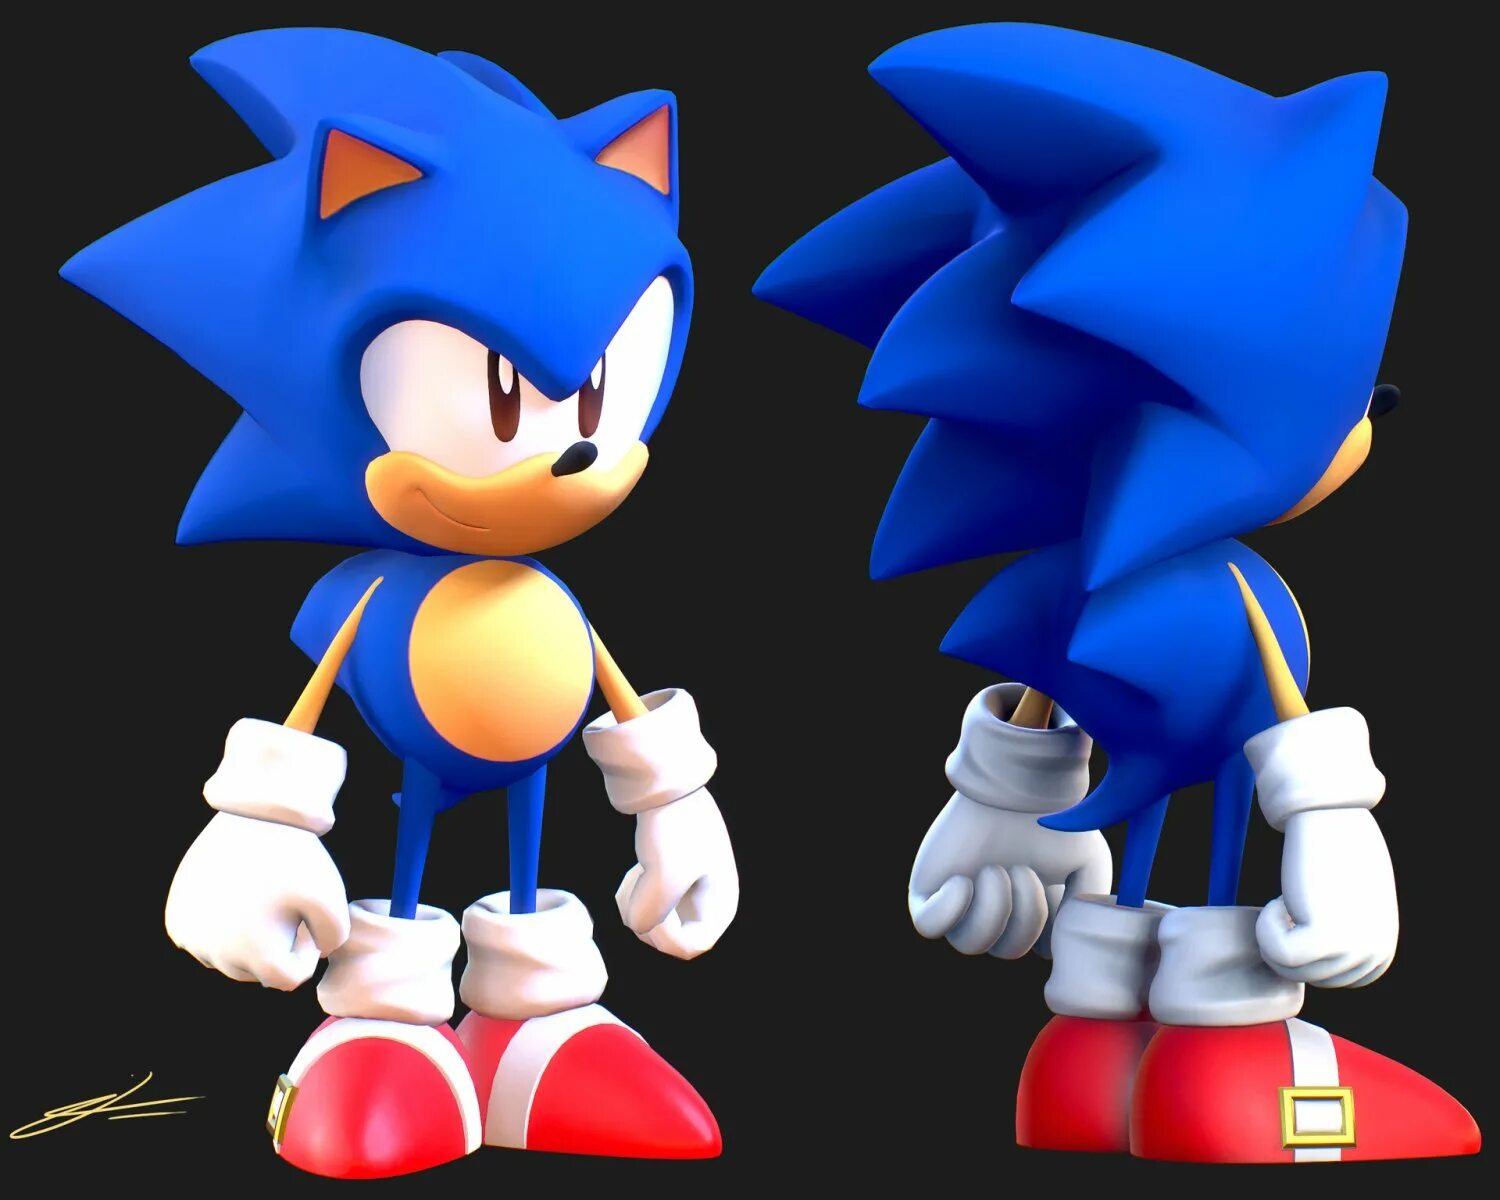 Classic Sonic 3d. Classic Sonic 3d model. Соник 3д модель. Classic Sonic model. Sonic classic 3